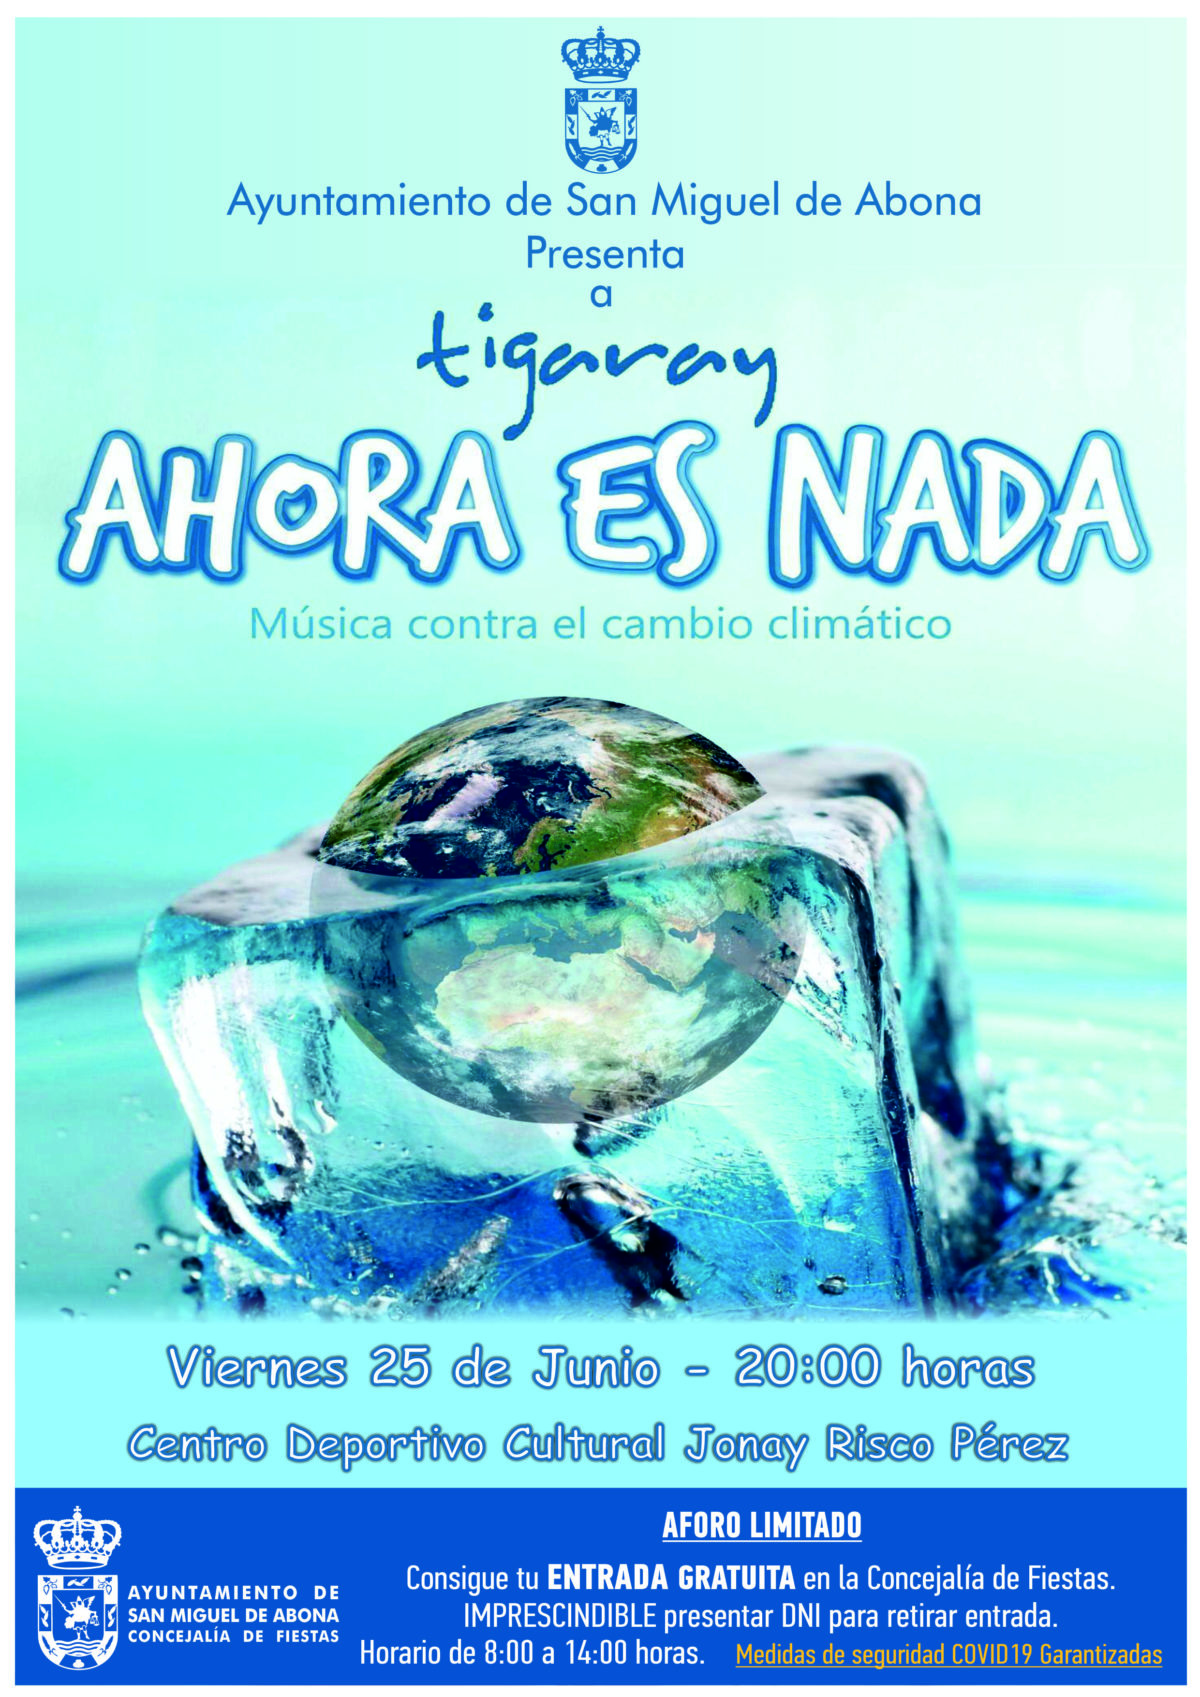 “Ahora es Nada” música contra el cambio climático, llega a San Miguel de Abona